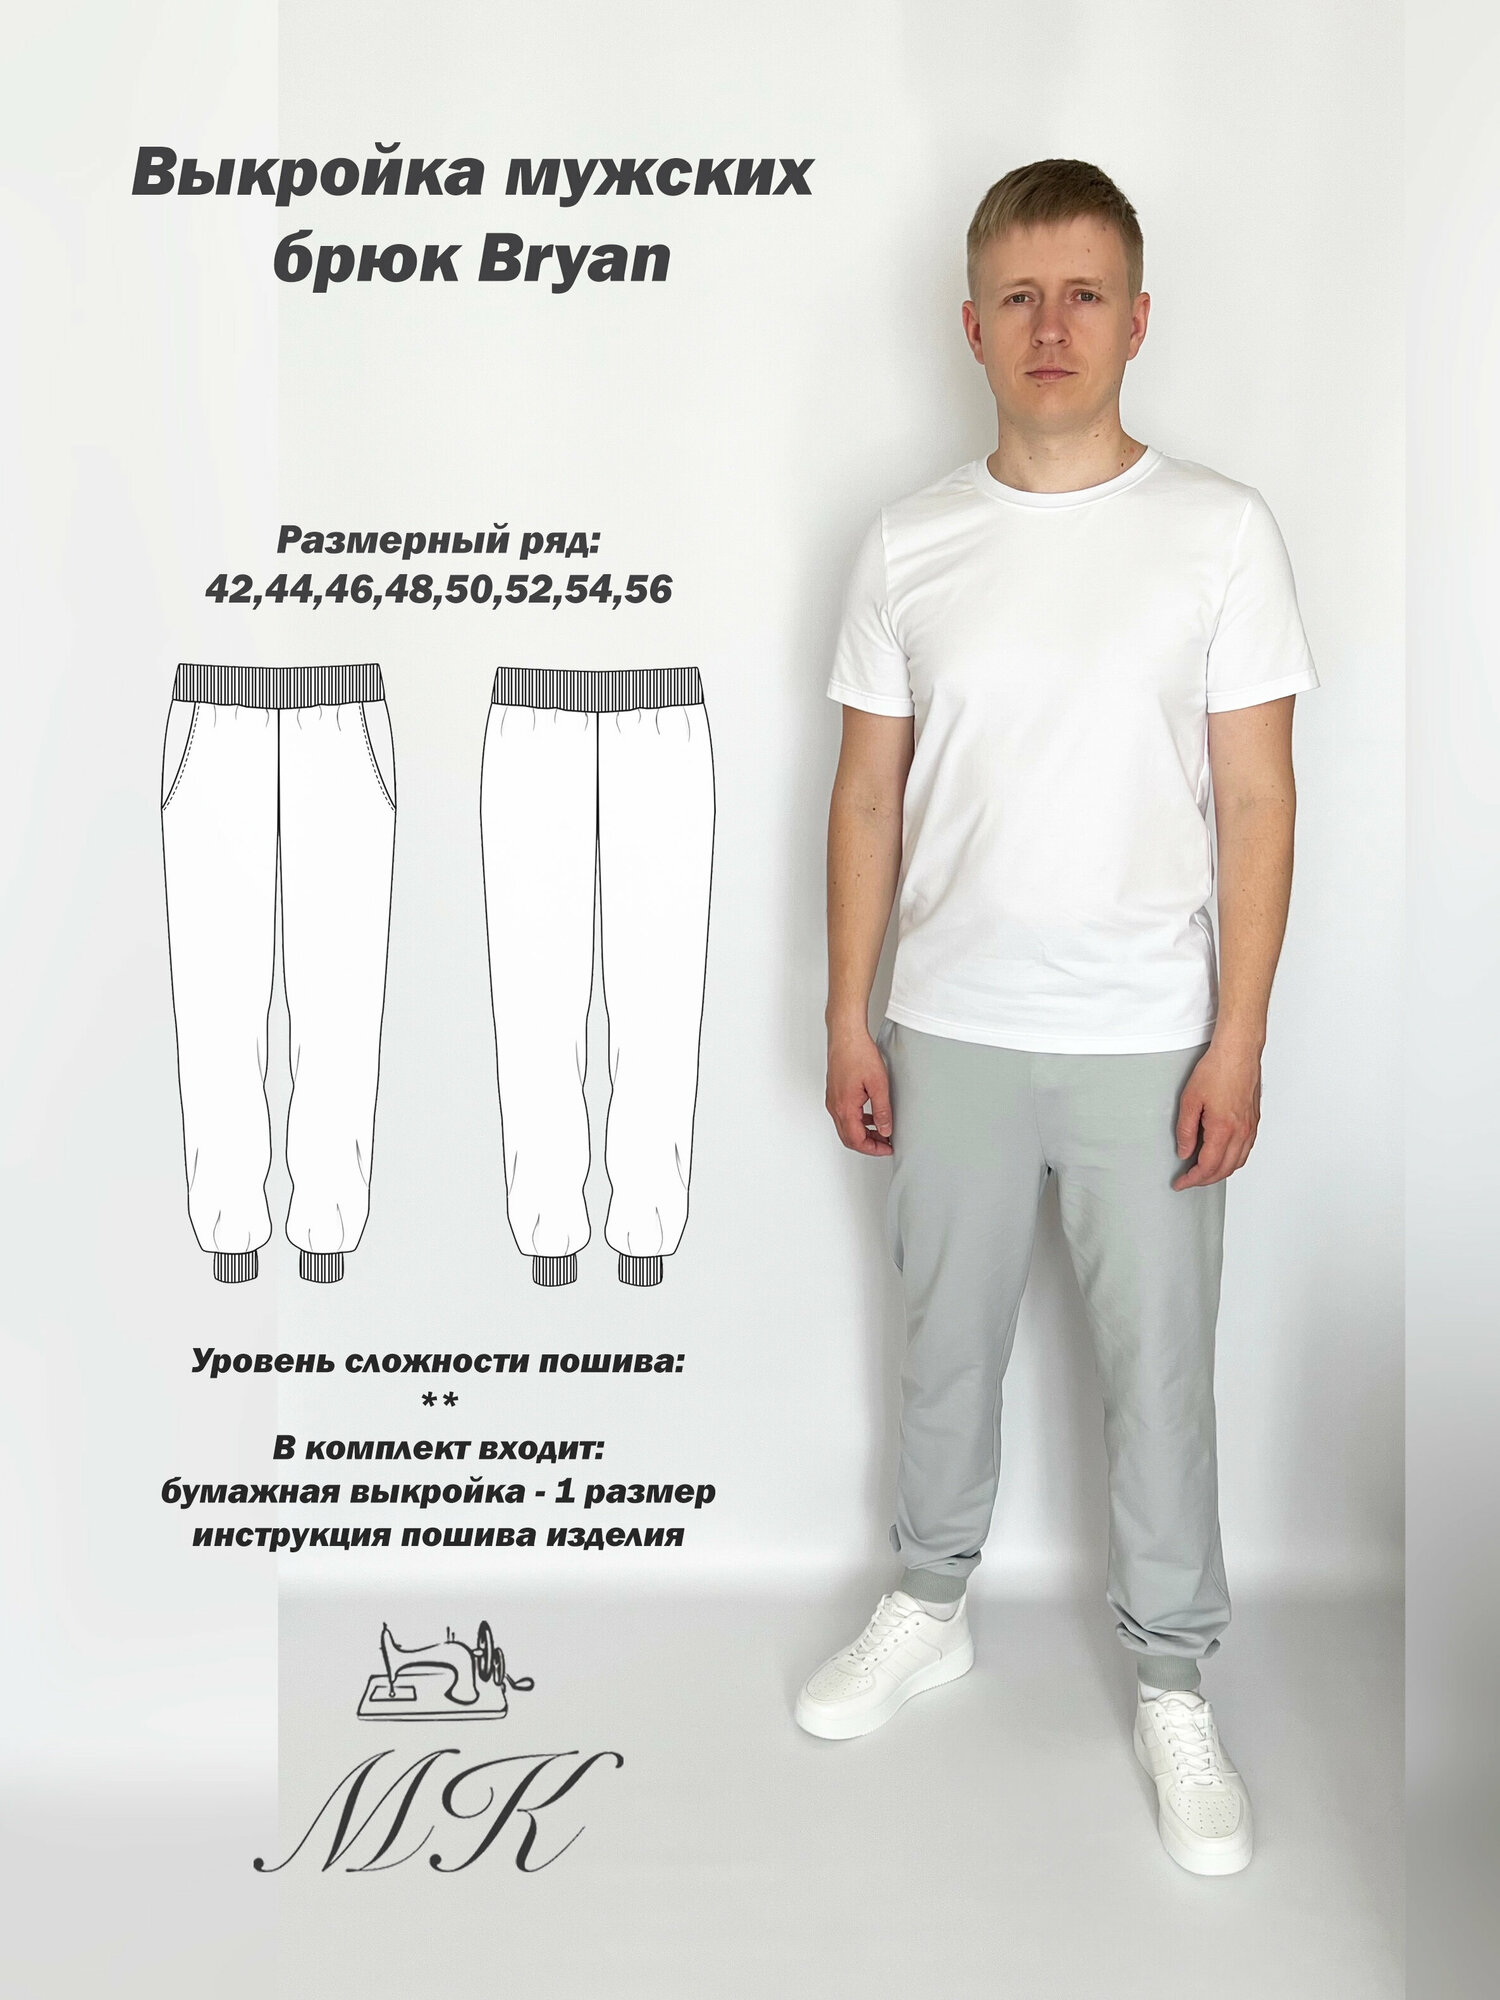 Выкройка для шитья MK-studiya мужские спортивные брюки размер 48